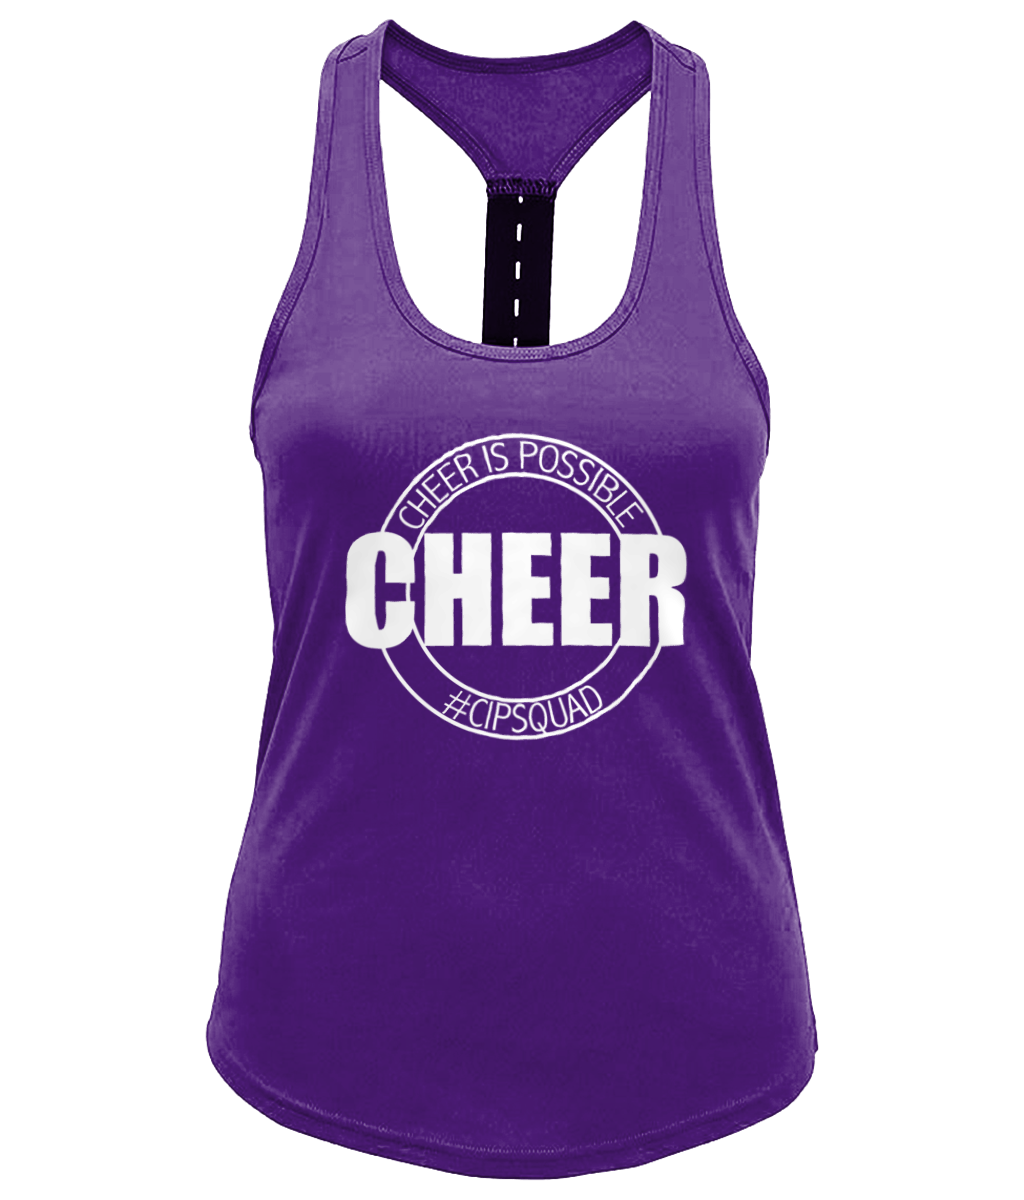 CIP: Cheer Ladies Performance Strap Back Gym Vest